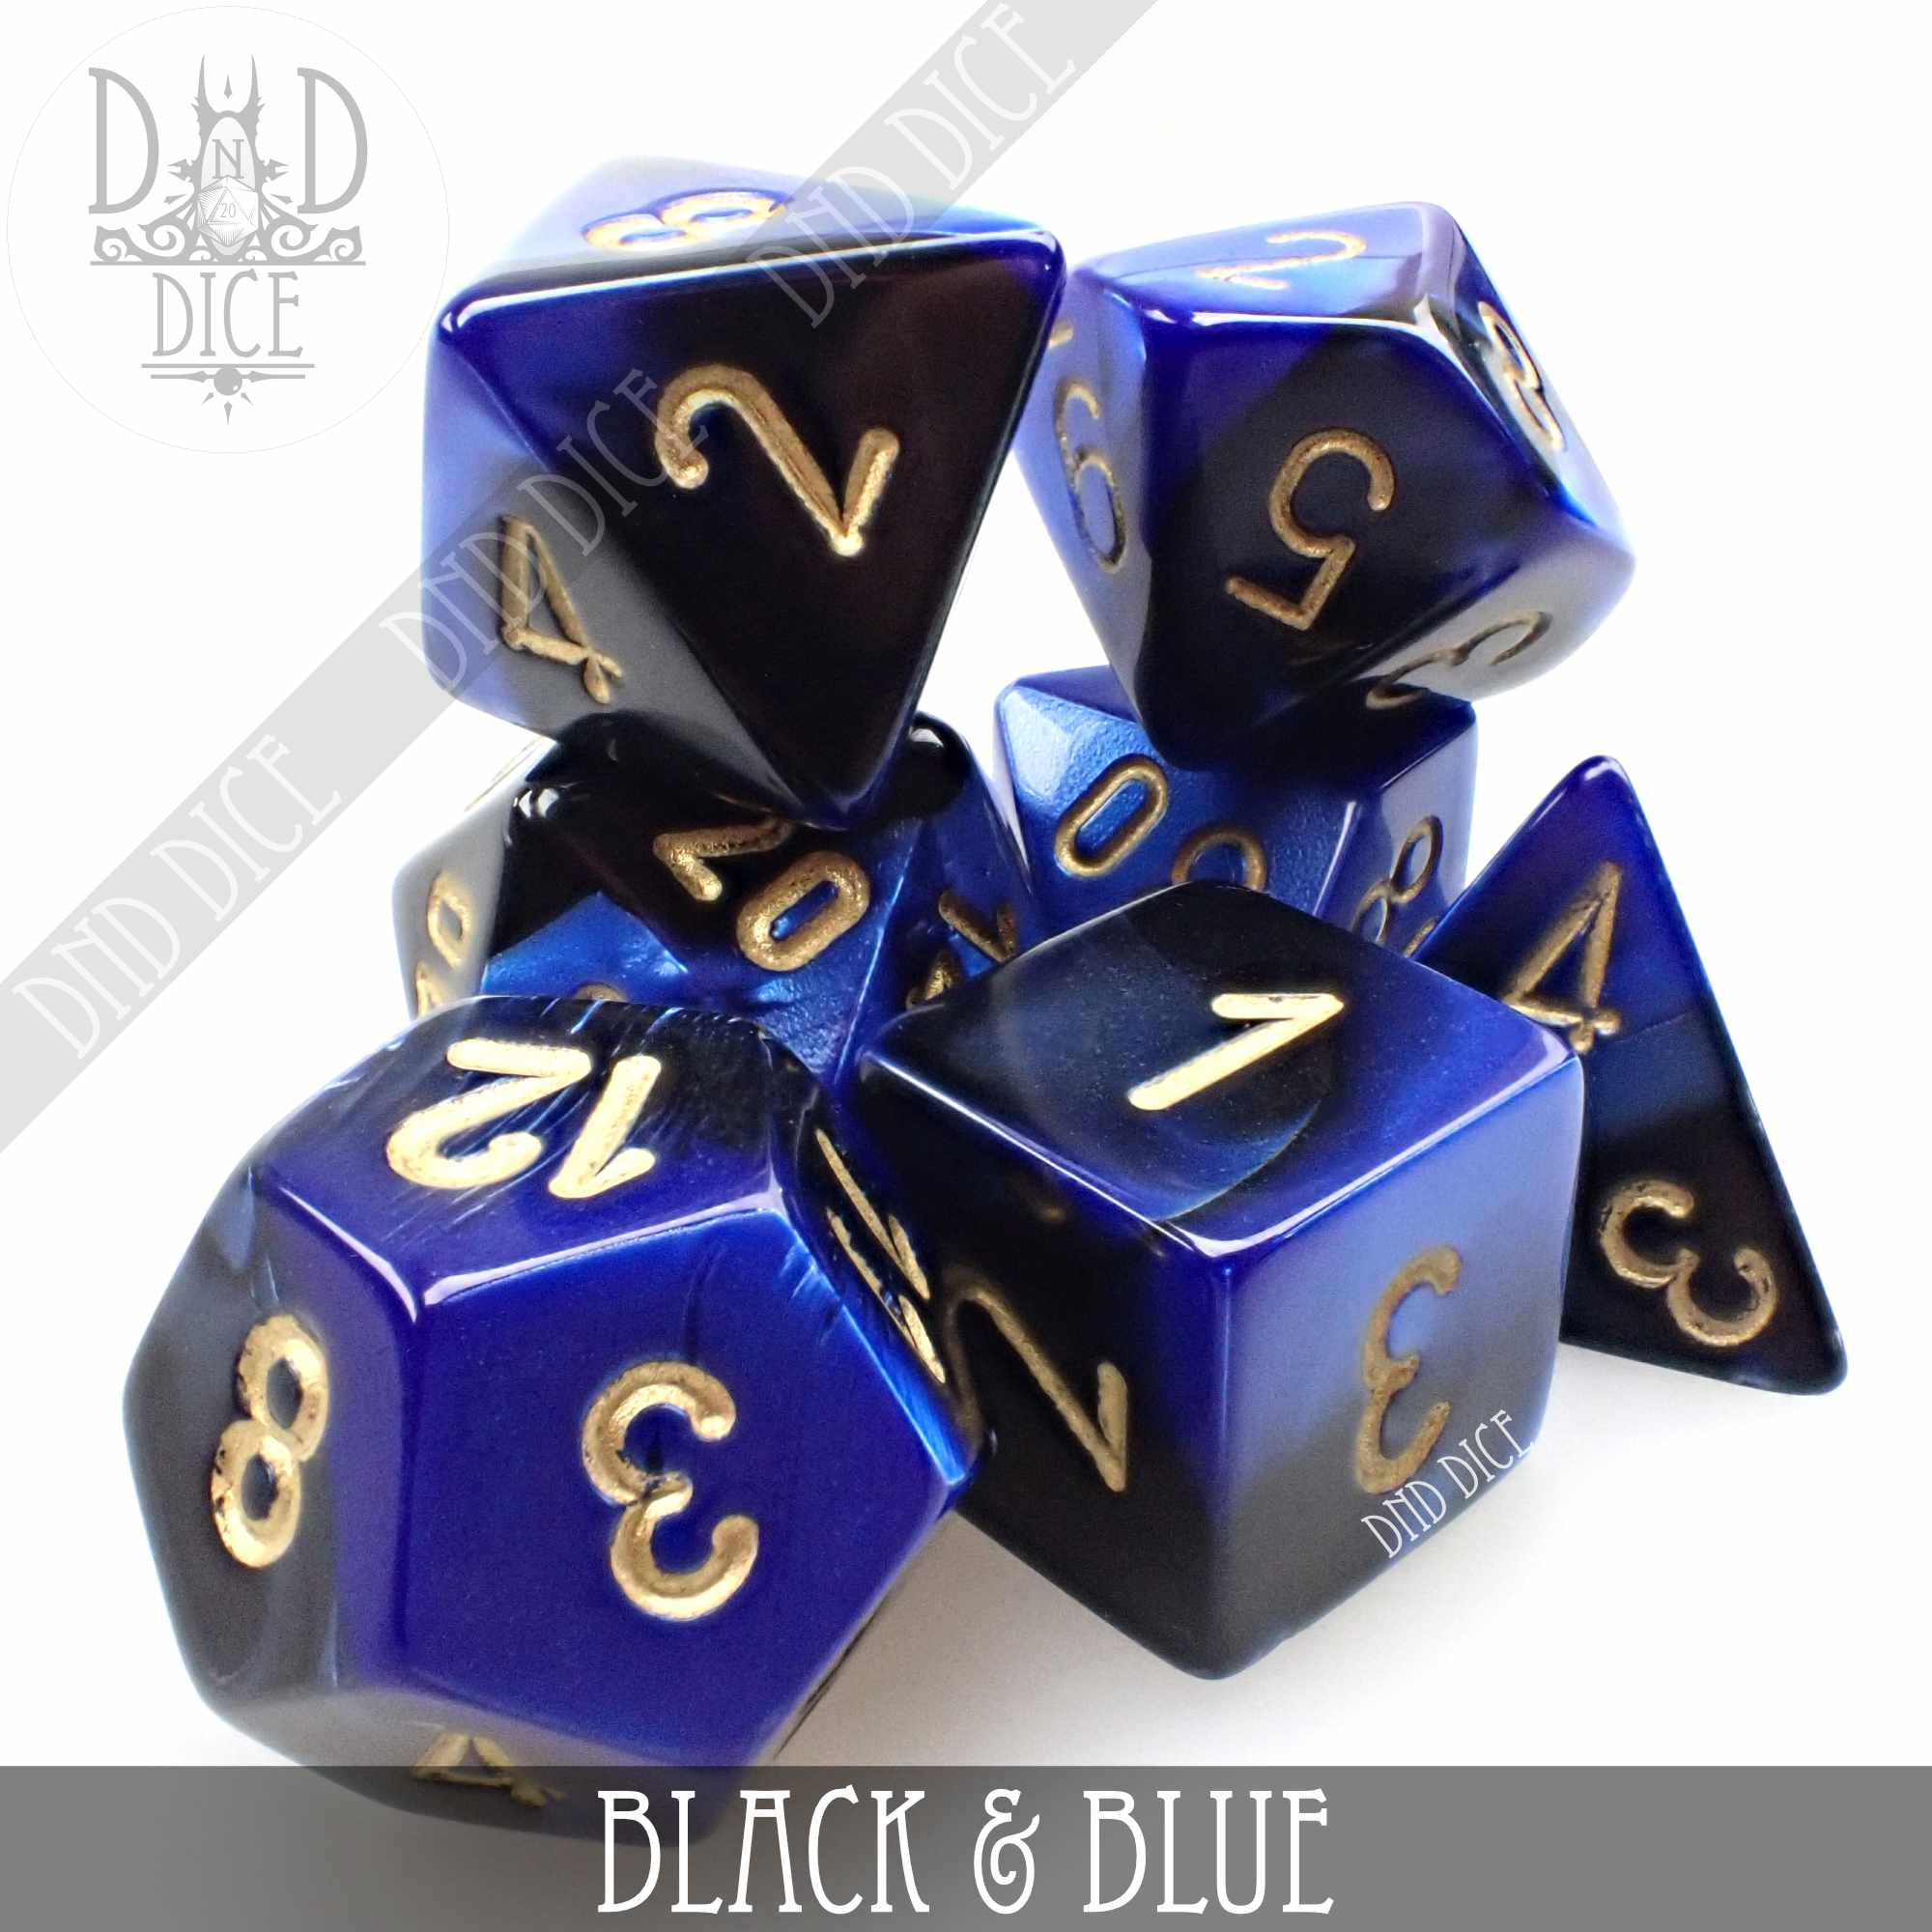 Black & Blue Build Your Own Set